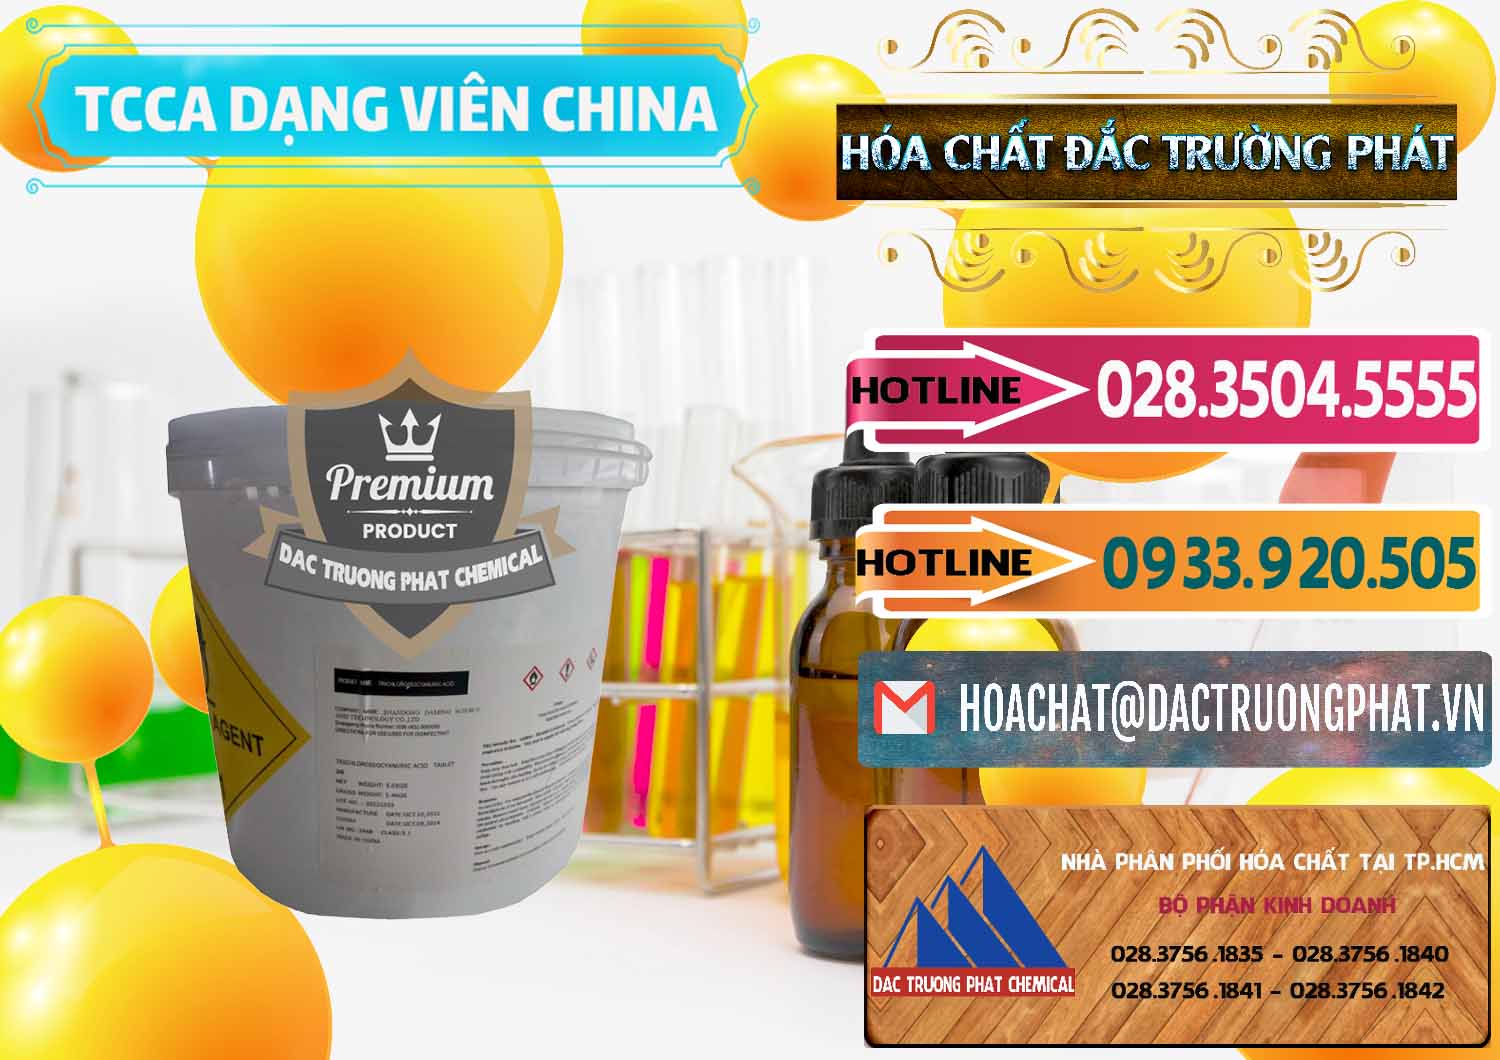 Cty bán - cung cấp TCCA - Acid Trichloroisocyanuric Dạng Viên Thùng 5kg Trung Quốc China - 0379 - Cty phân phối và cung ứng hóa chất tại TP.HCM - dactruongphat.vn